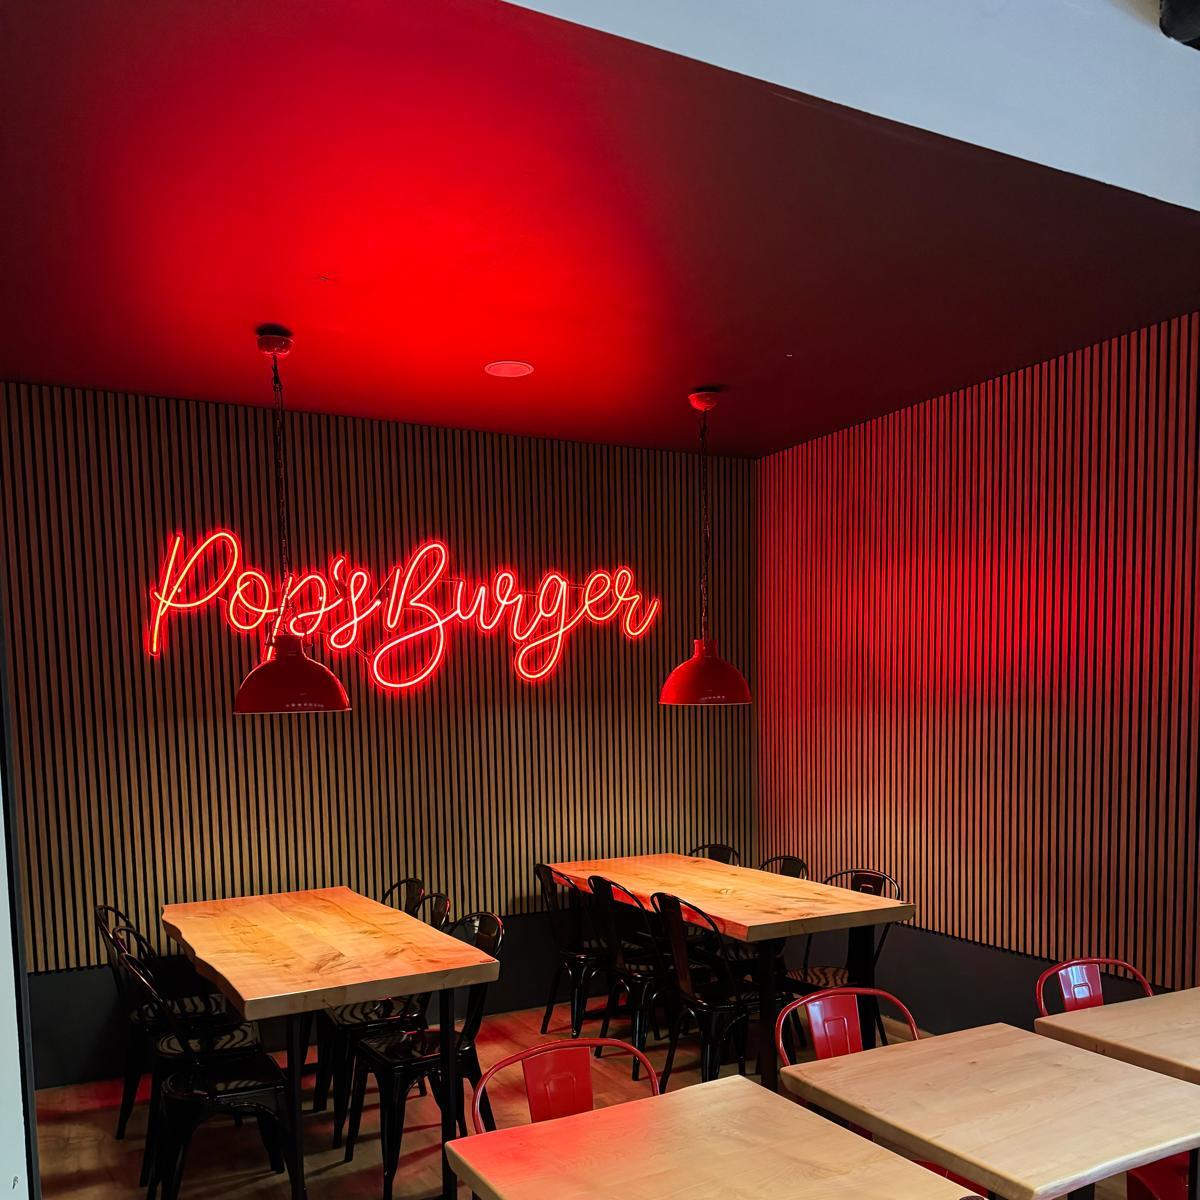 Restaurant "Pops Burger & Sportsbar" in Sindelfingen